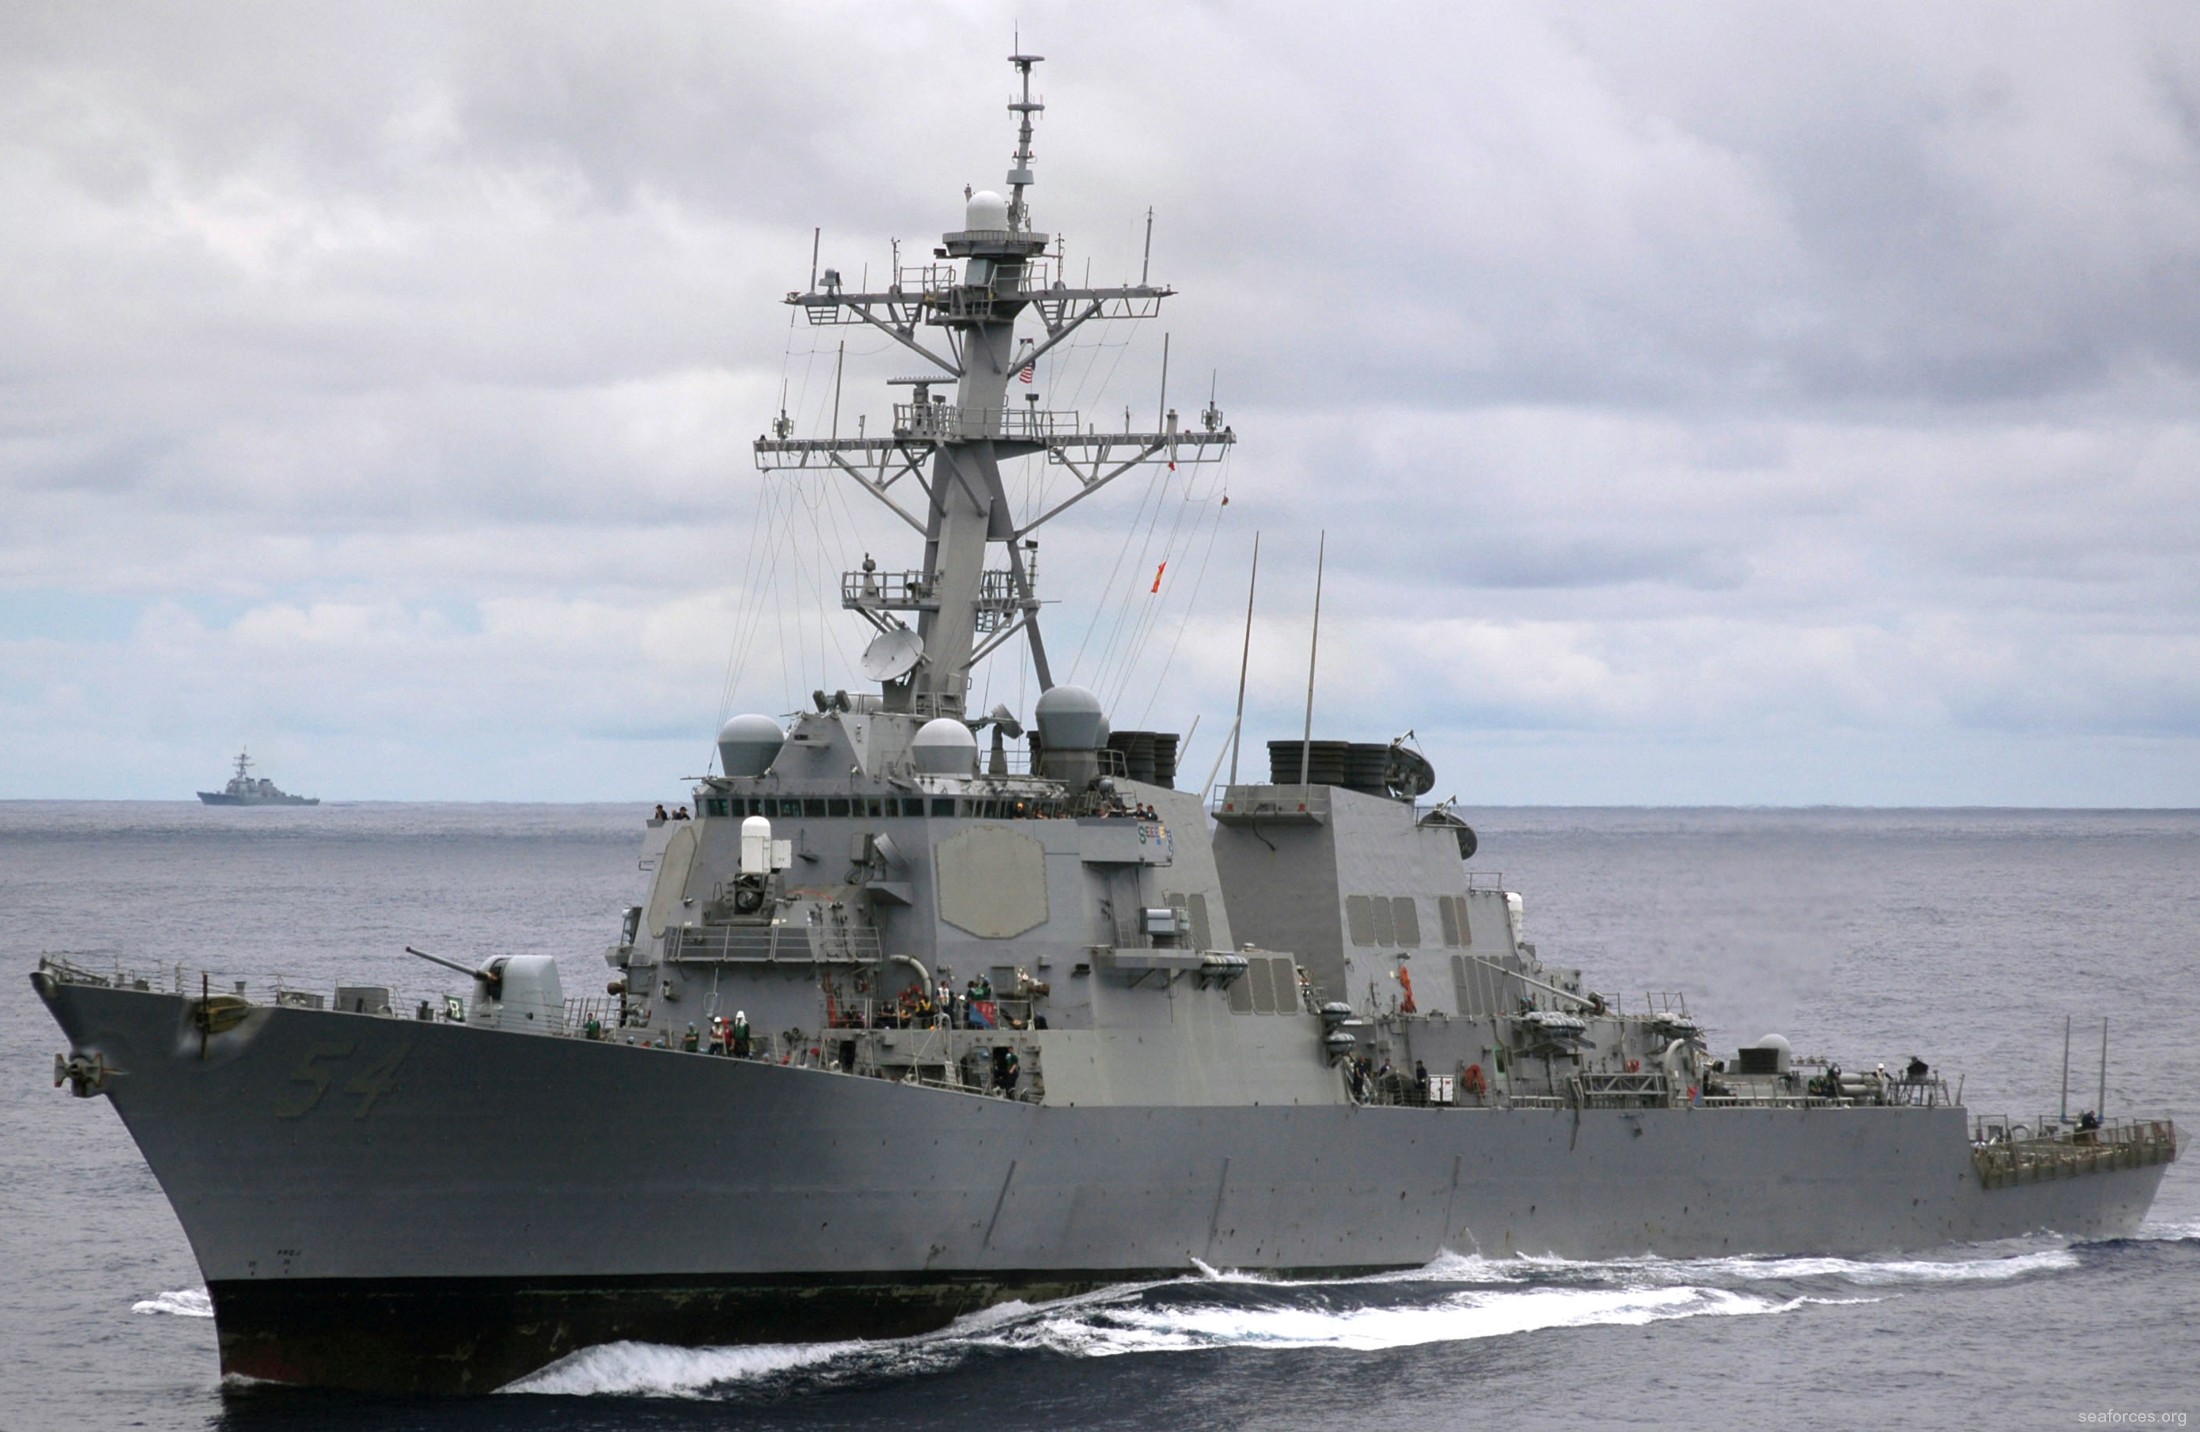 ddg-54 uss curtis wilbur destroyer us navy 73